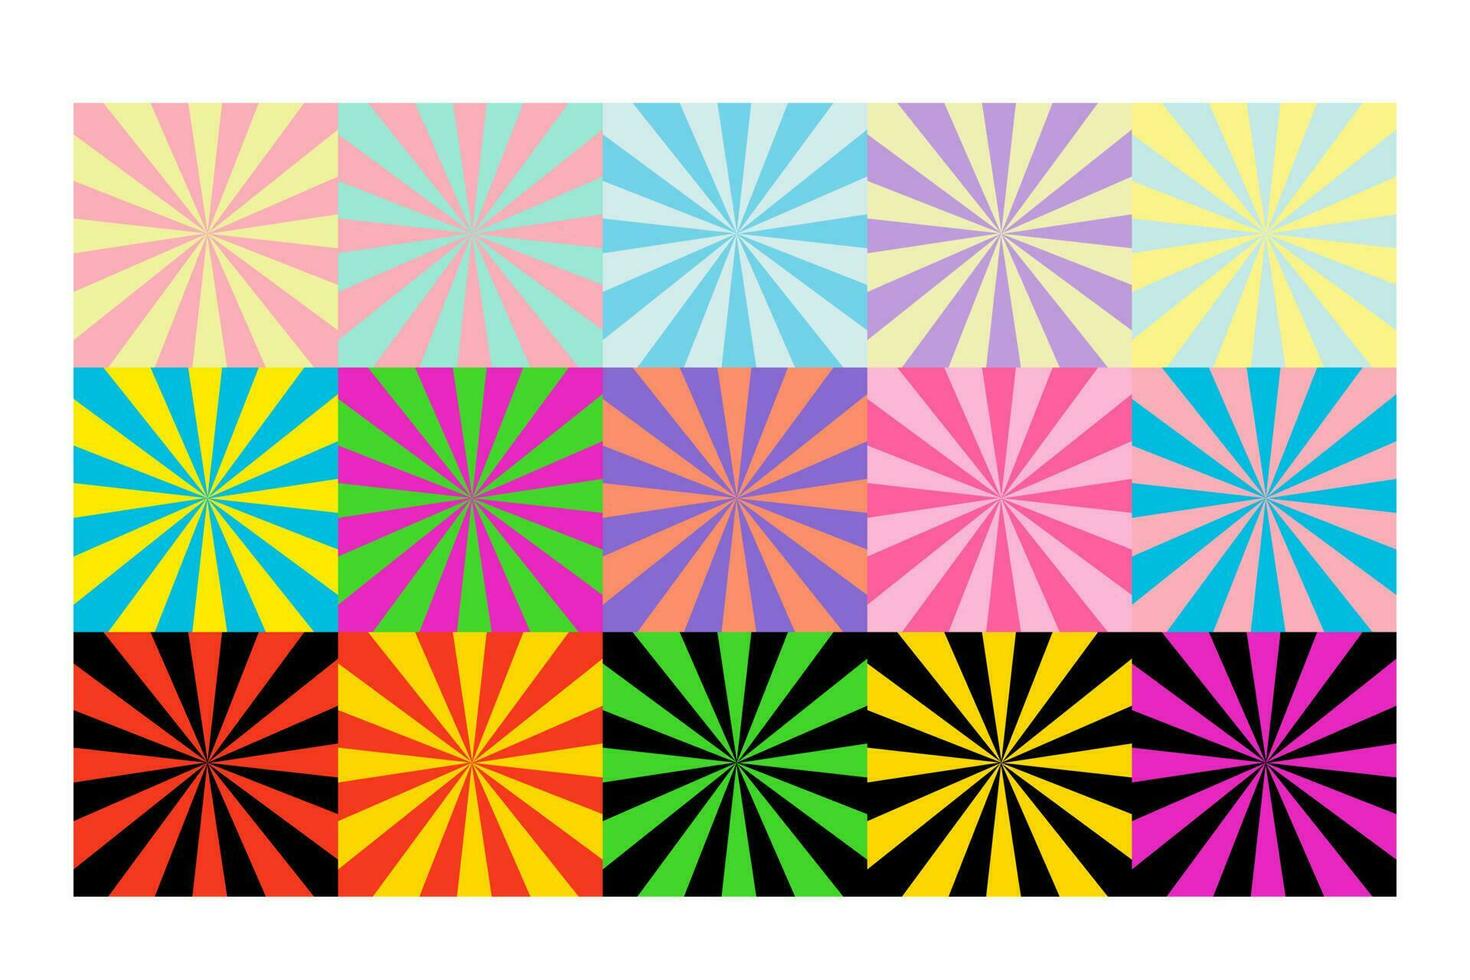 Spread-Beam-Hintergrund inklusive verschiedener Farbsets vektor